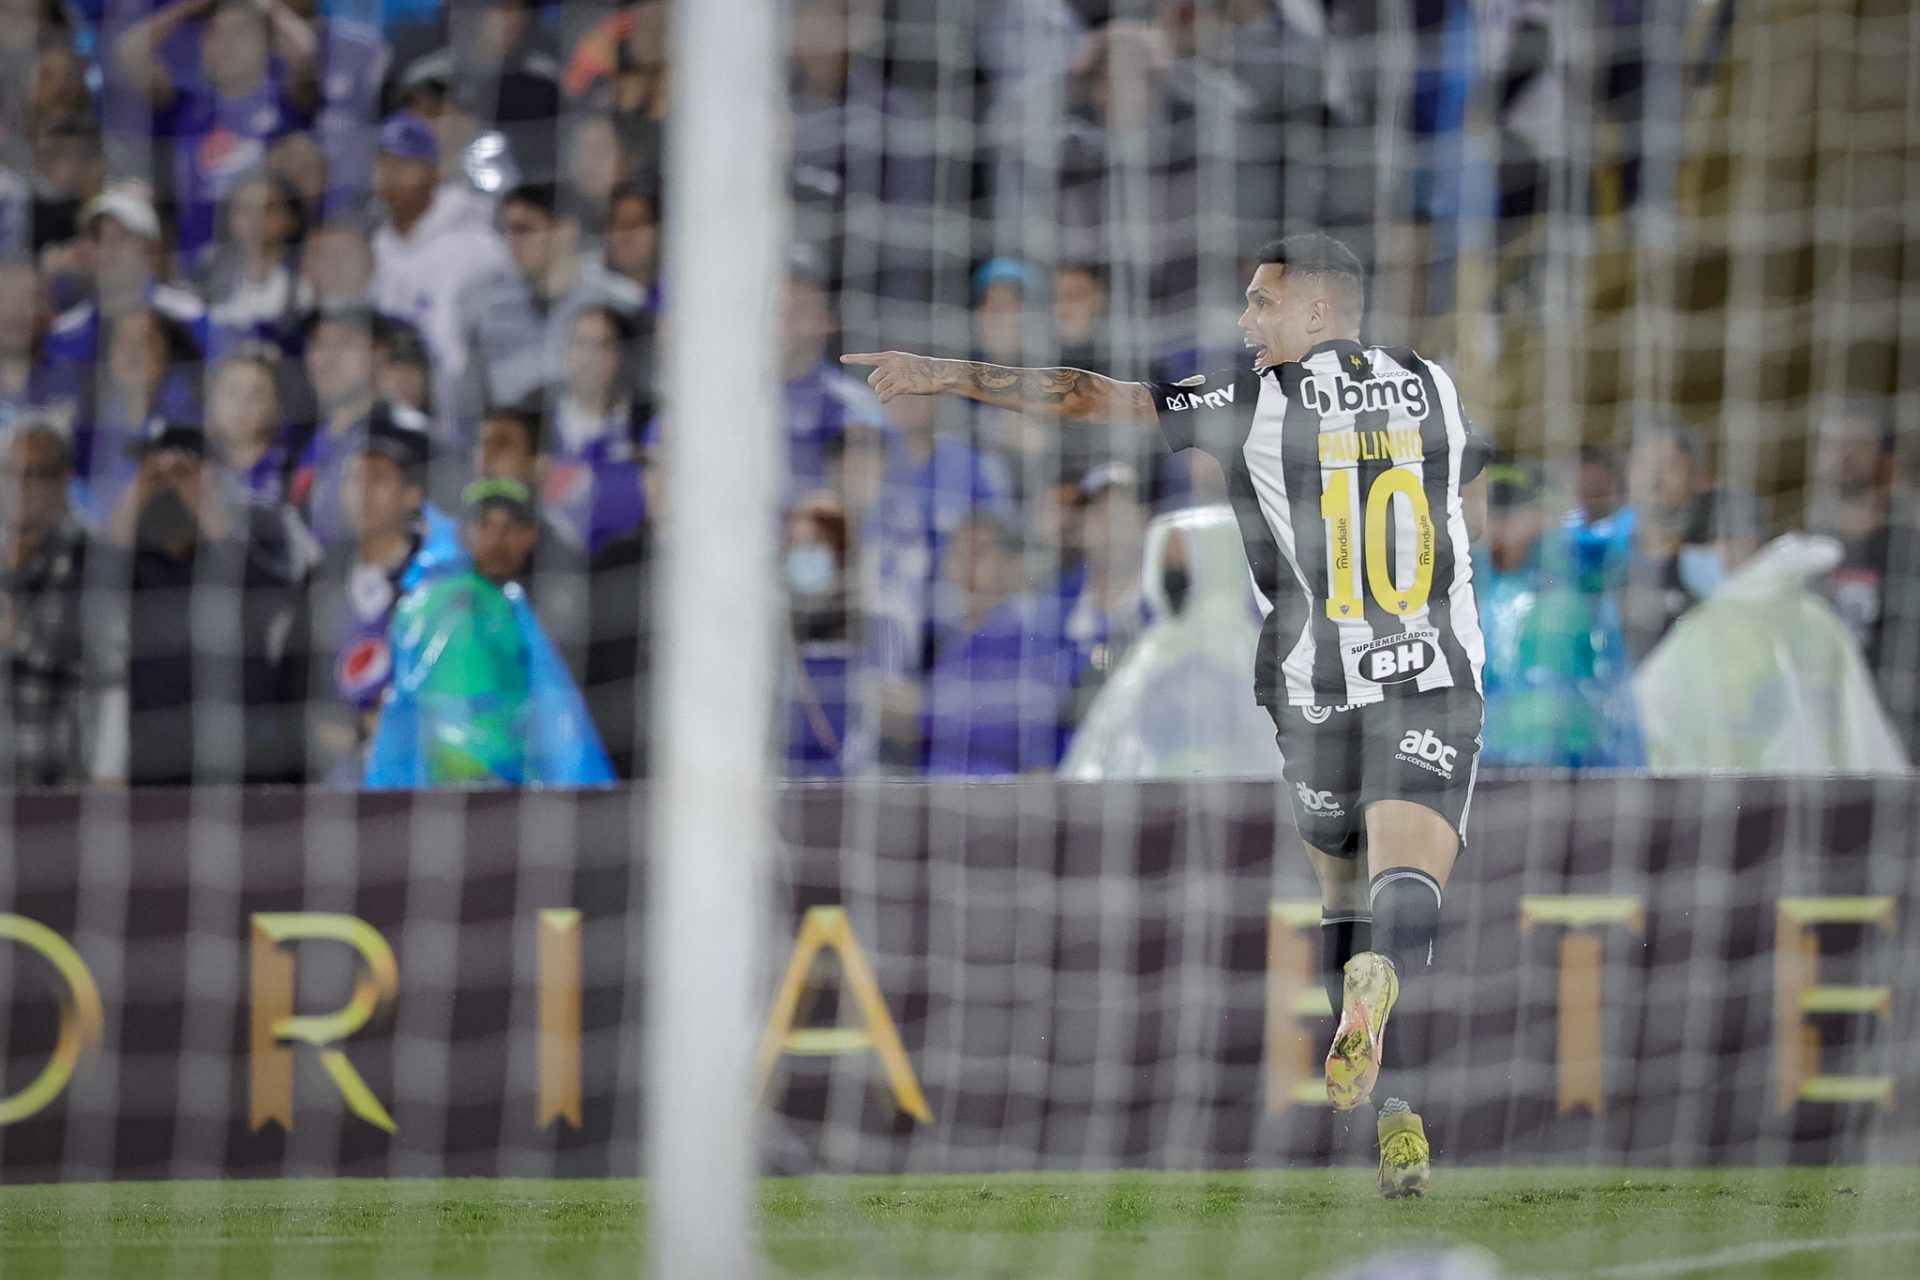 Millonarios sai na frente, mas Paulinho marca belo gol e Atlético volta com  empate da Colômbia